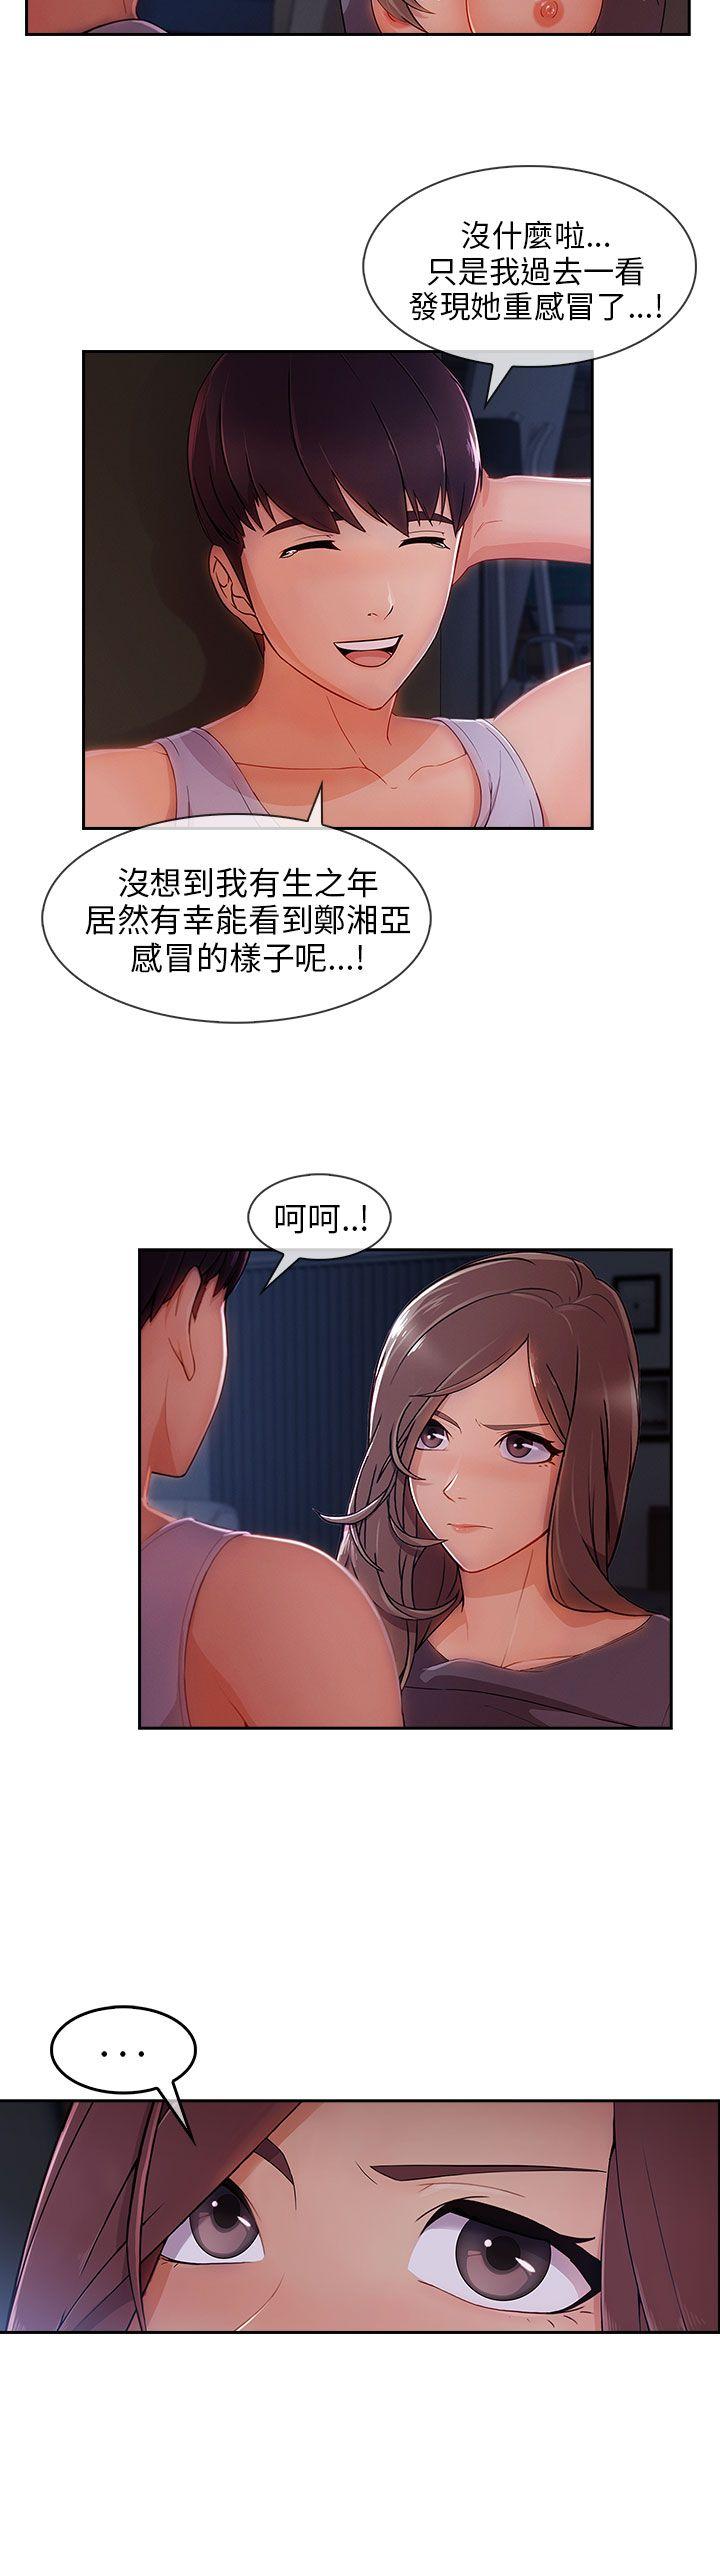 《湘亚:积极追求攻势》漫画 第30话